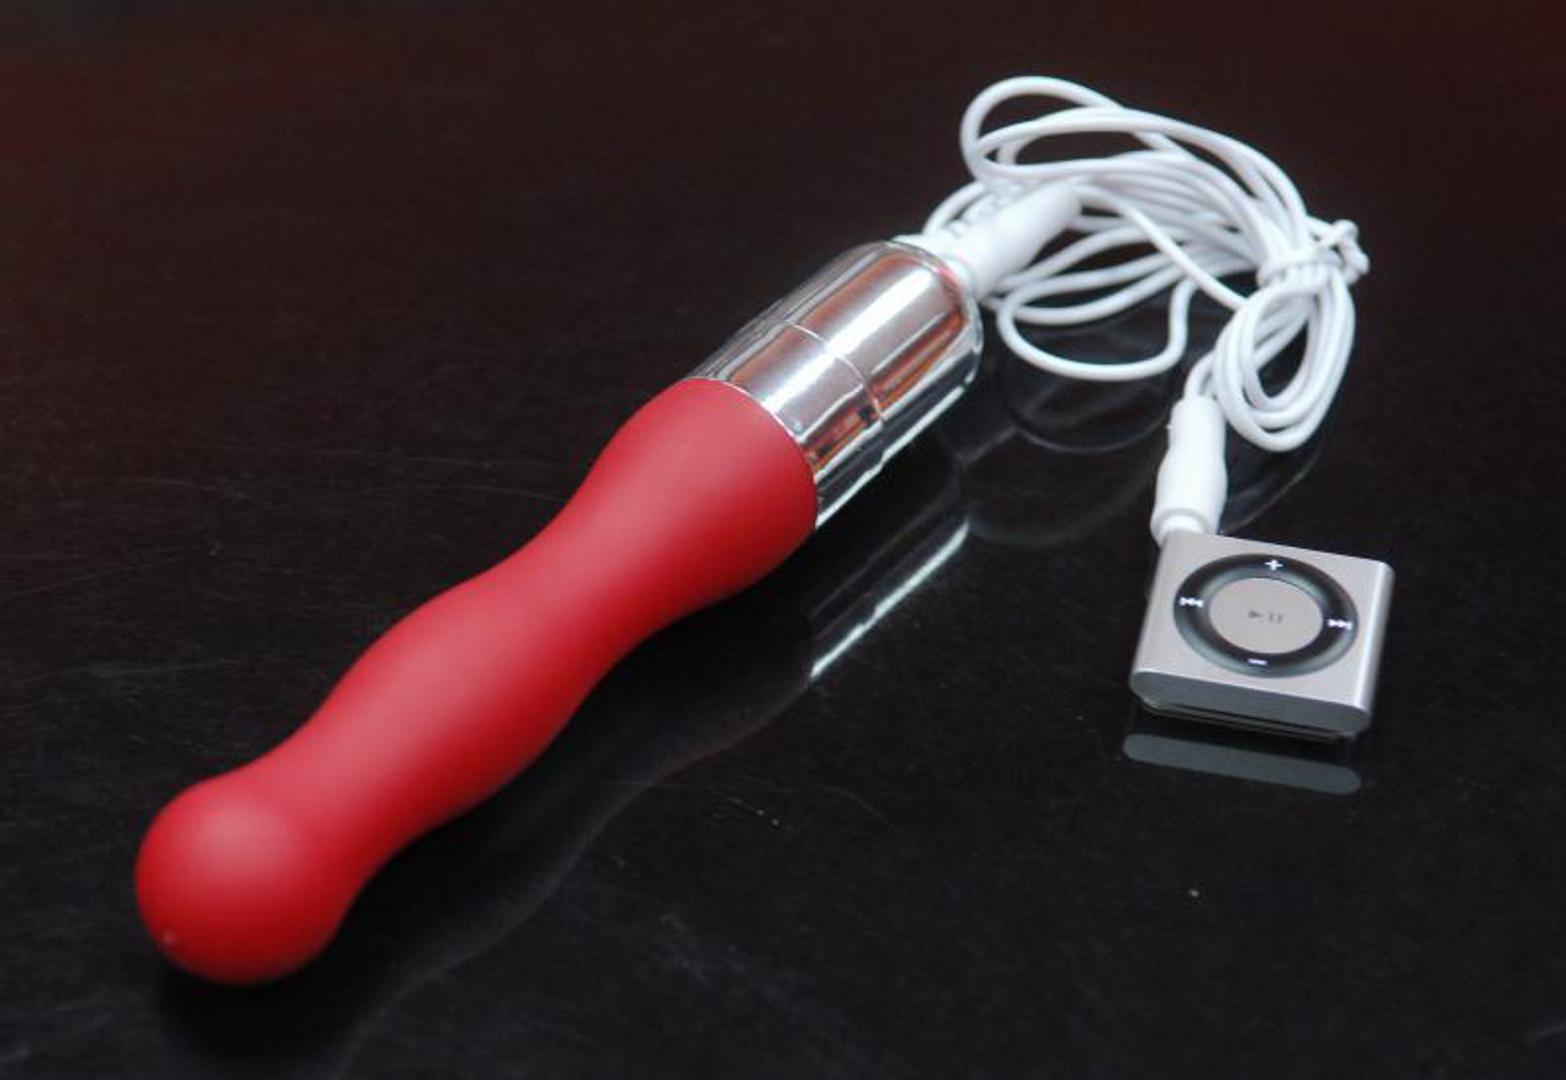 1. Nikako nemojte koristiti vaš uobičajeni stari vibrator za analne igrice. Za tako nešto potreban je posebno dizajnirani vibrator koji neće oštetiti stijenke anusa ili uzrokovati bol i infekciju